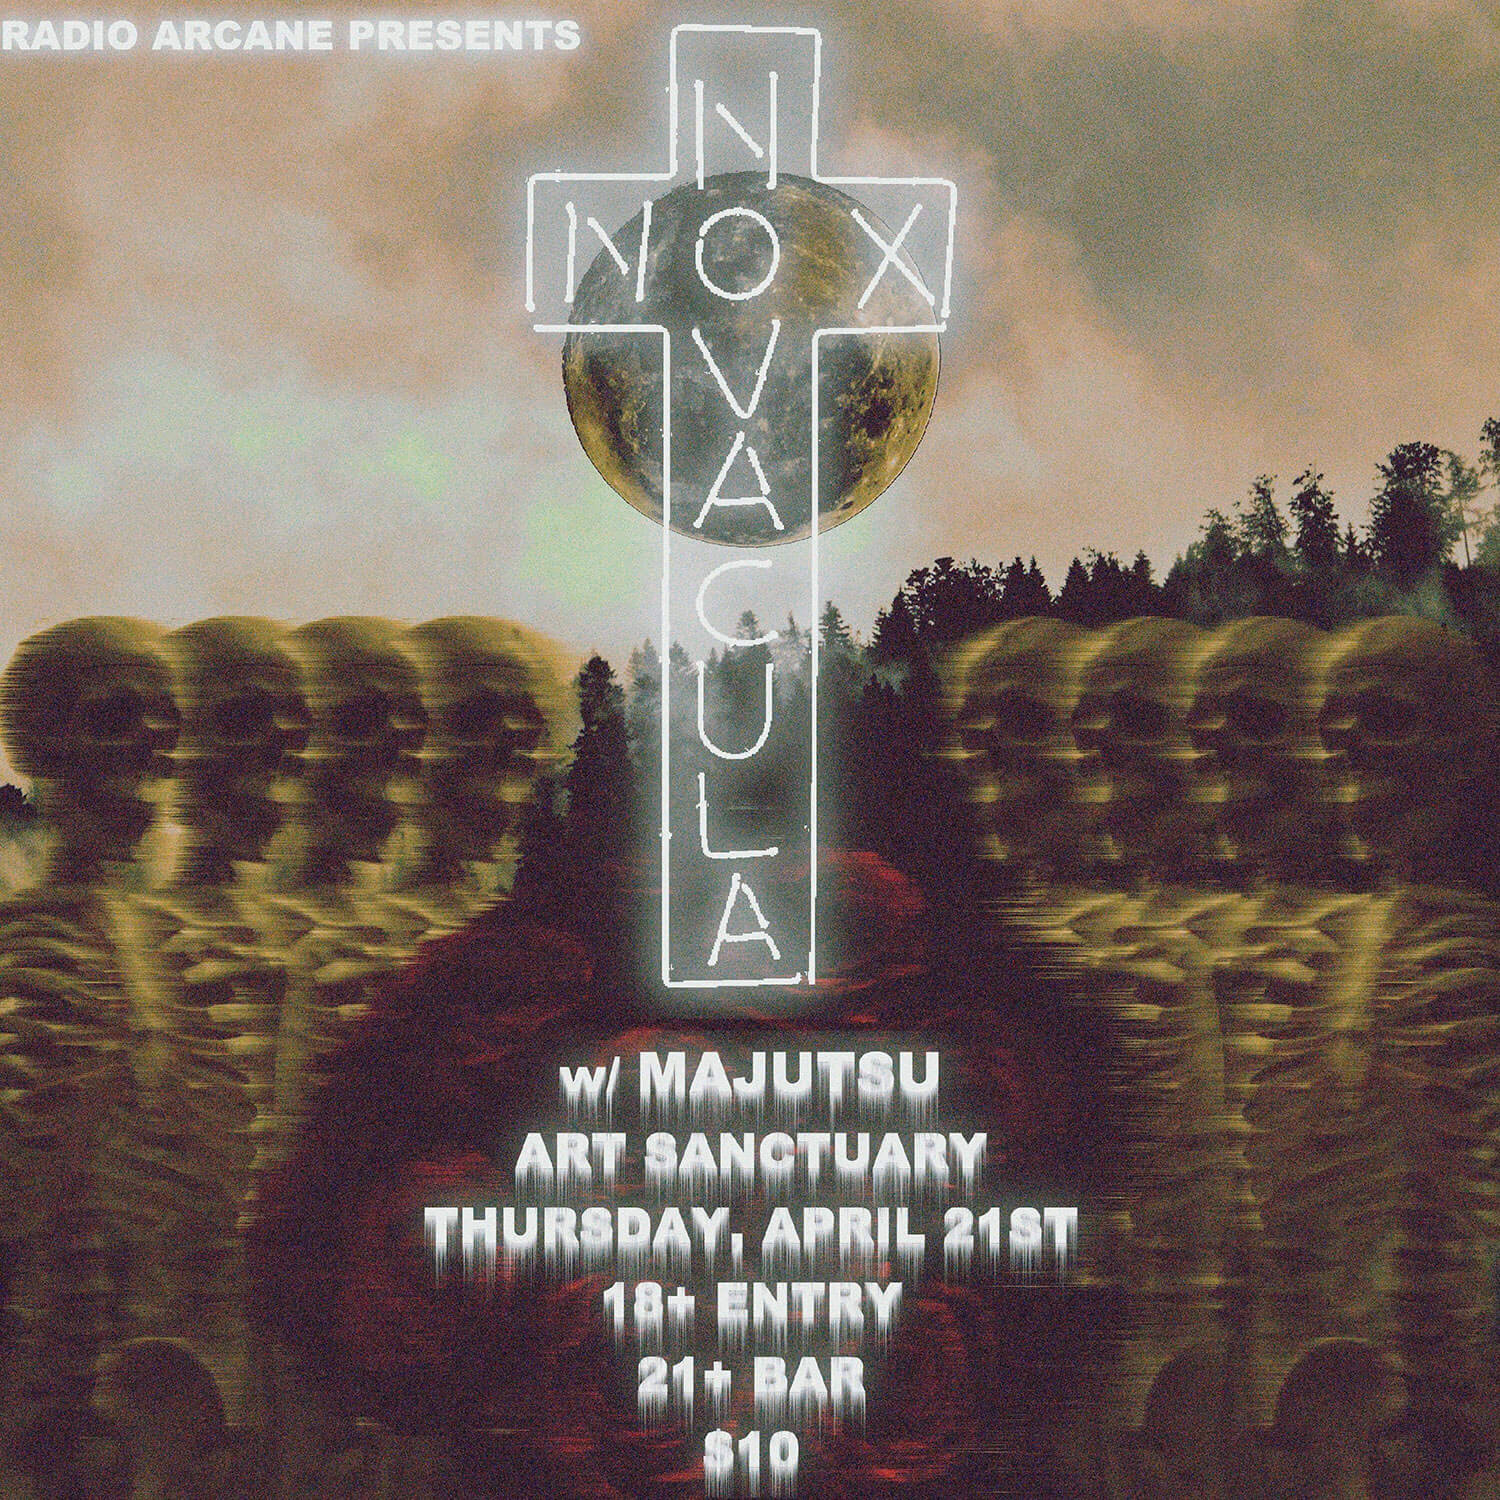 Nox Novacula Live at Art Sanctuary with Majutsu